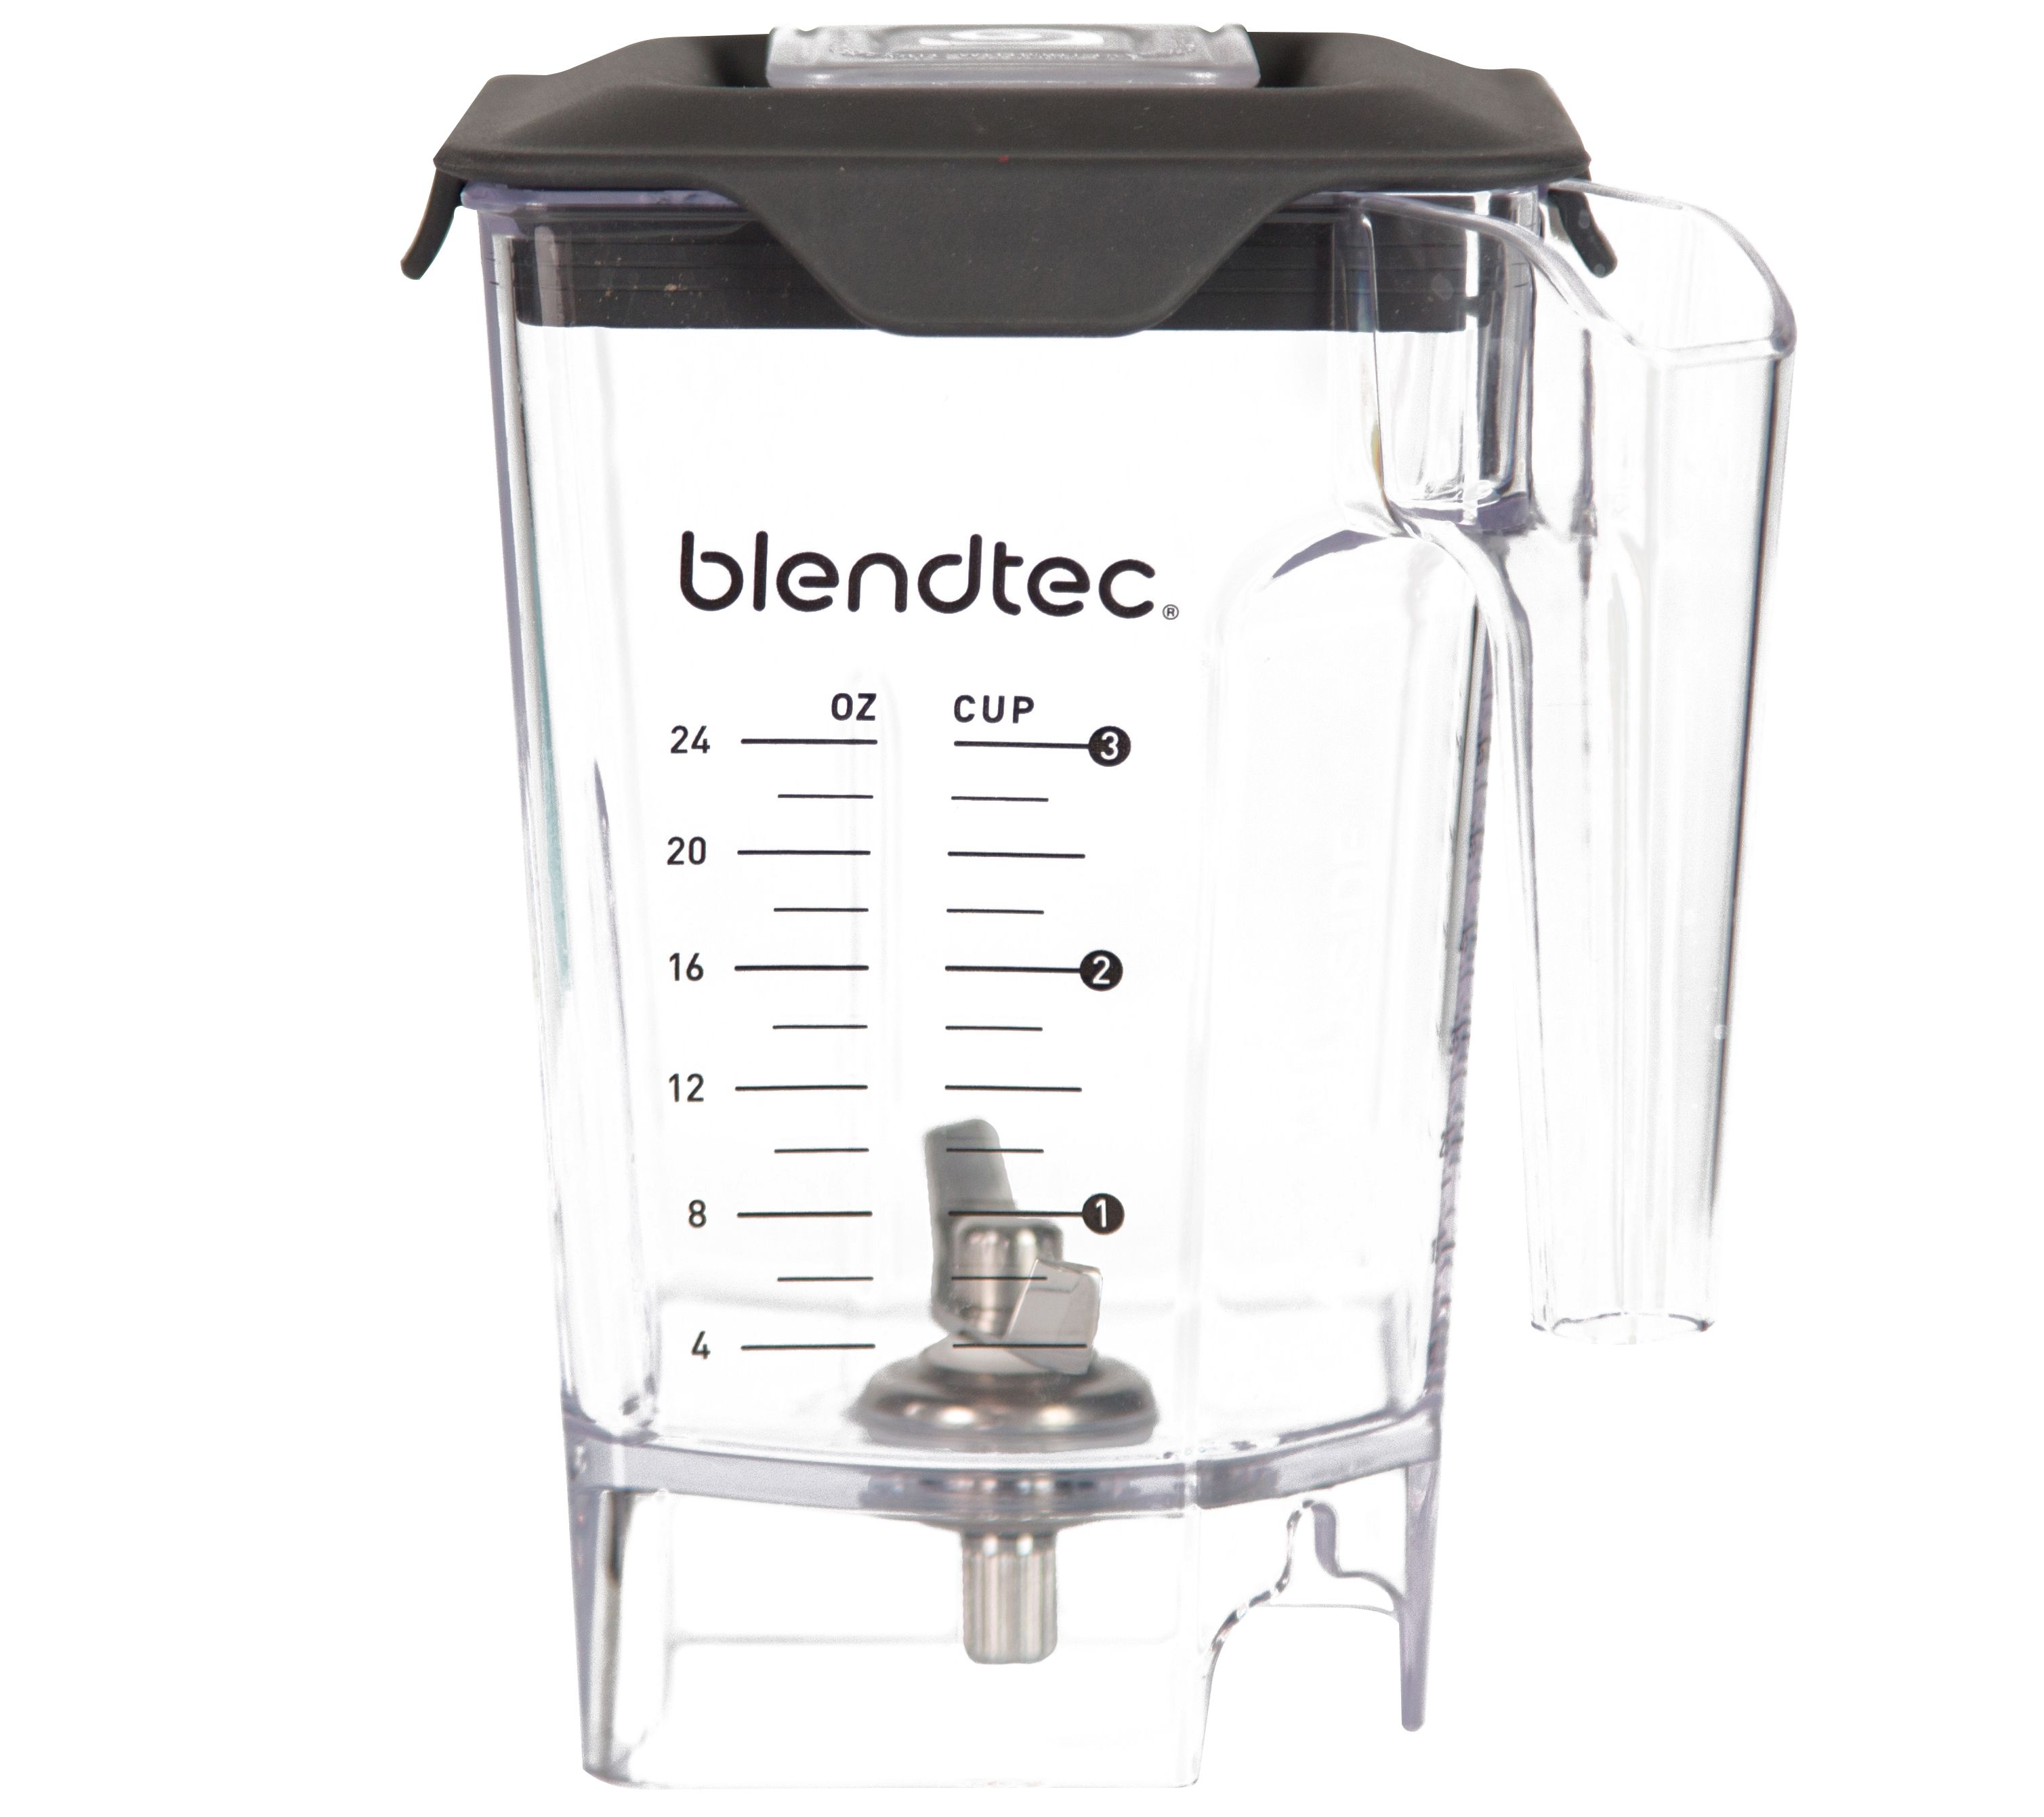 Blendtec Professional 800 Black Blender with WildSide+ Jar and Silicone Blender Spatula